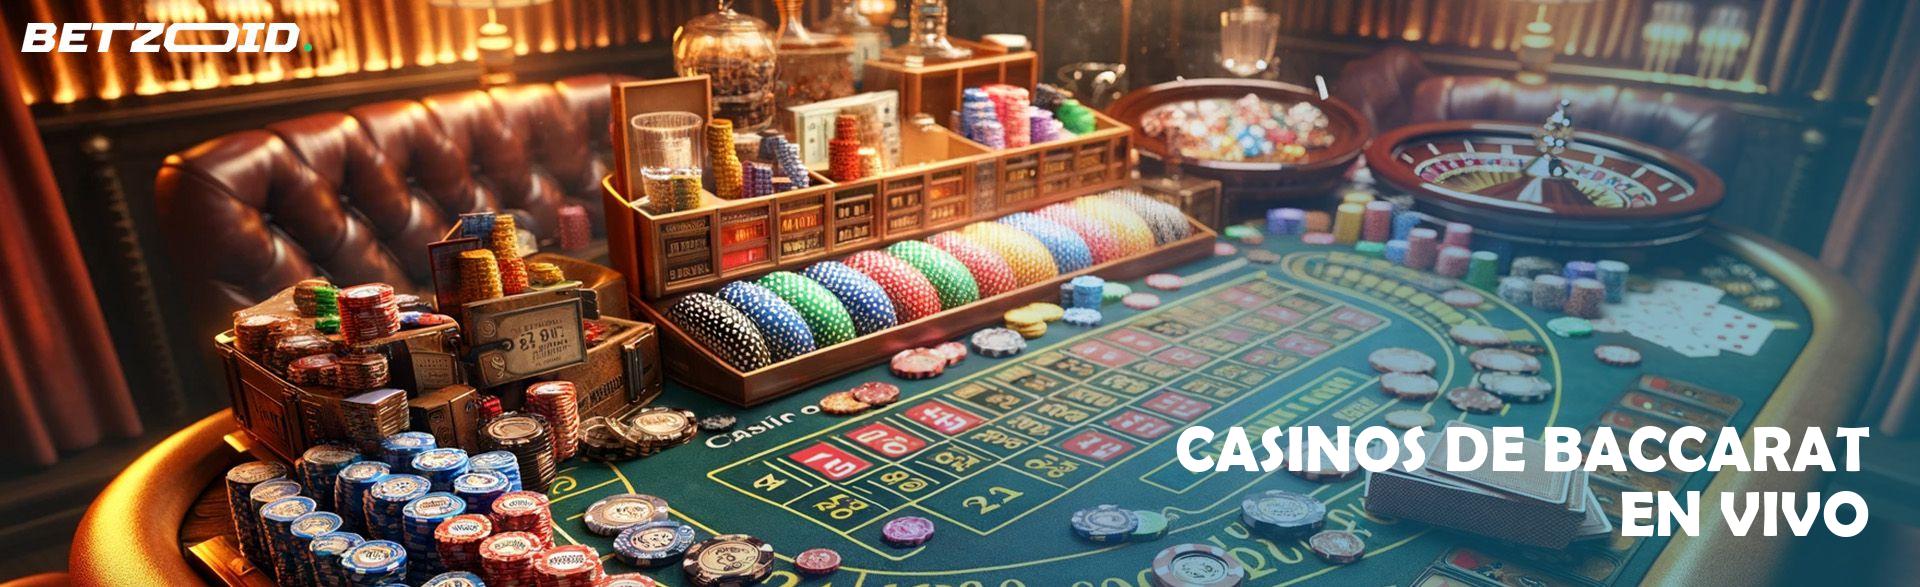 Casinos de Baccarat En Vivo.